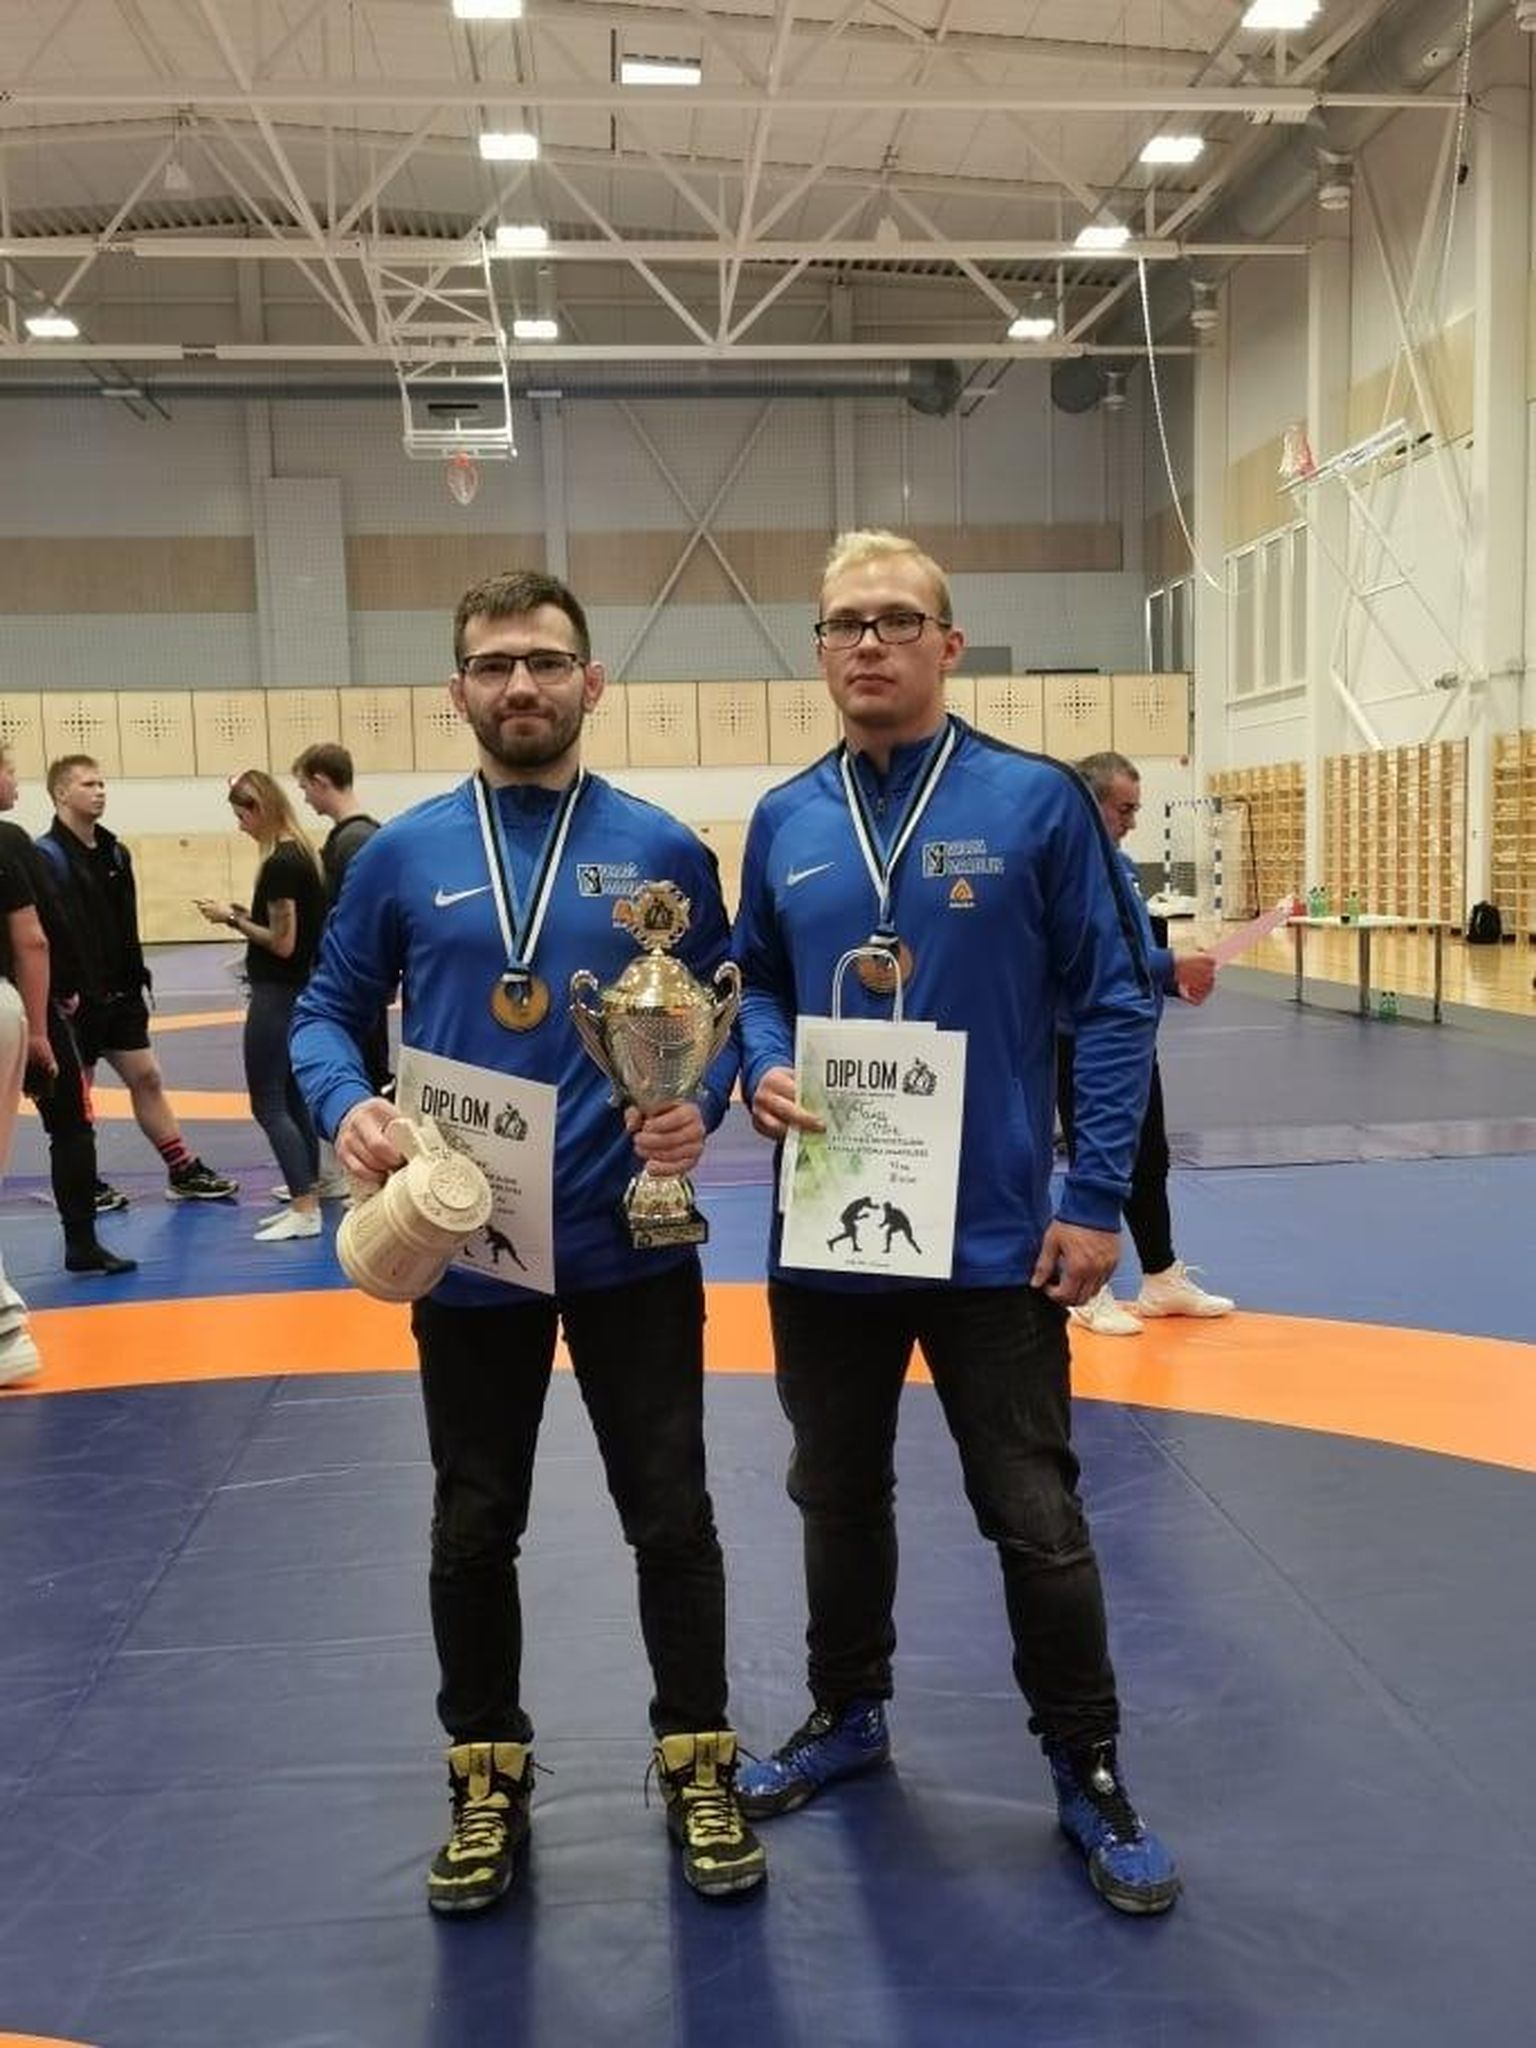 Valgalastest medalimehed Ott Saar (vasakul) ja Tanel Põrk FOTO: Valga Spordiklubi